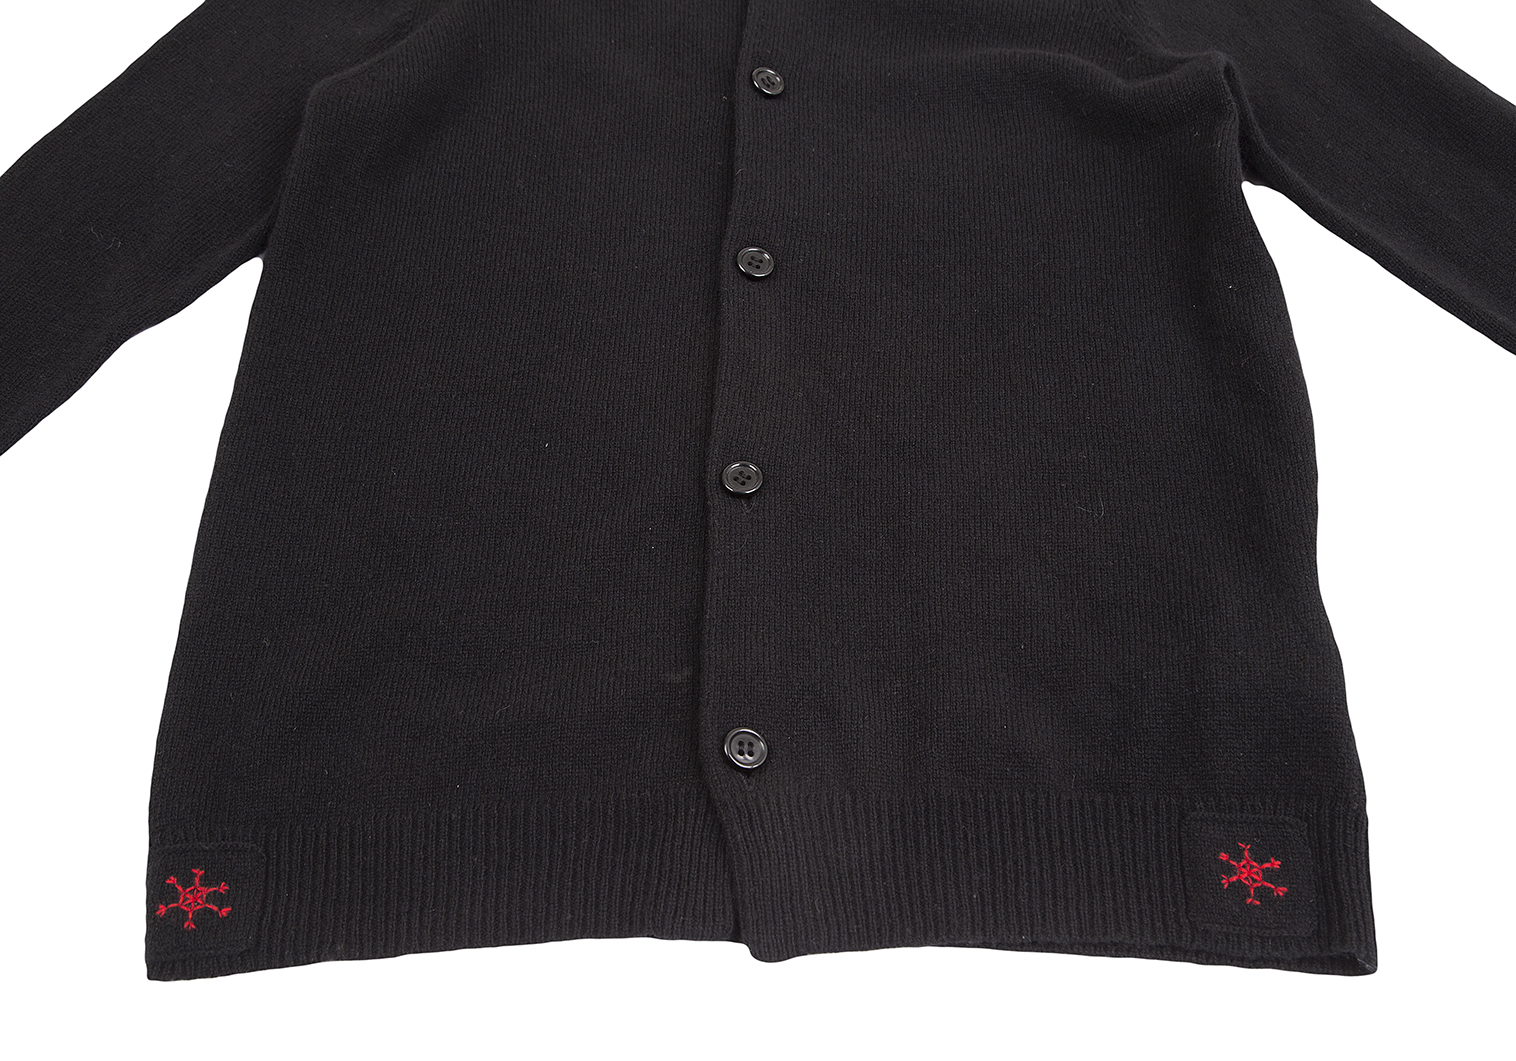 ワイズY's ウール裾パッチデザインカーディガン 黒3